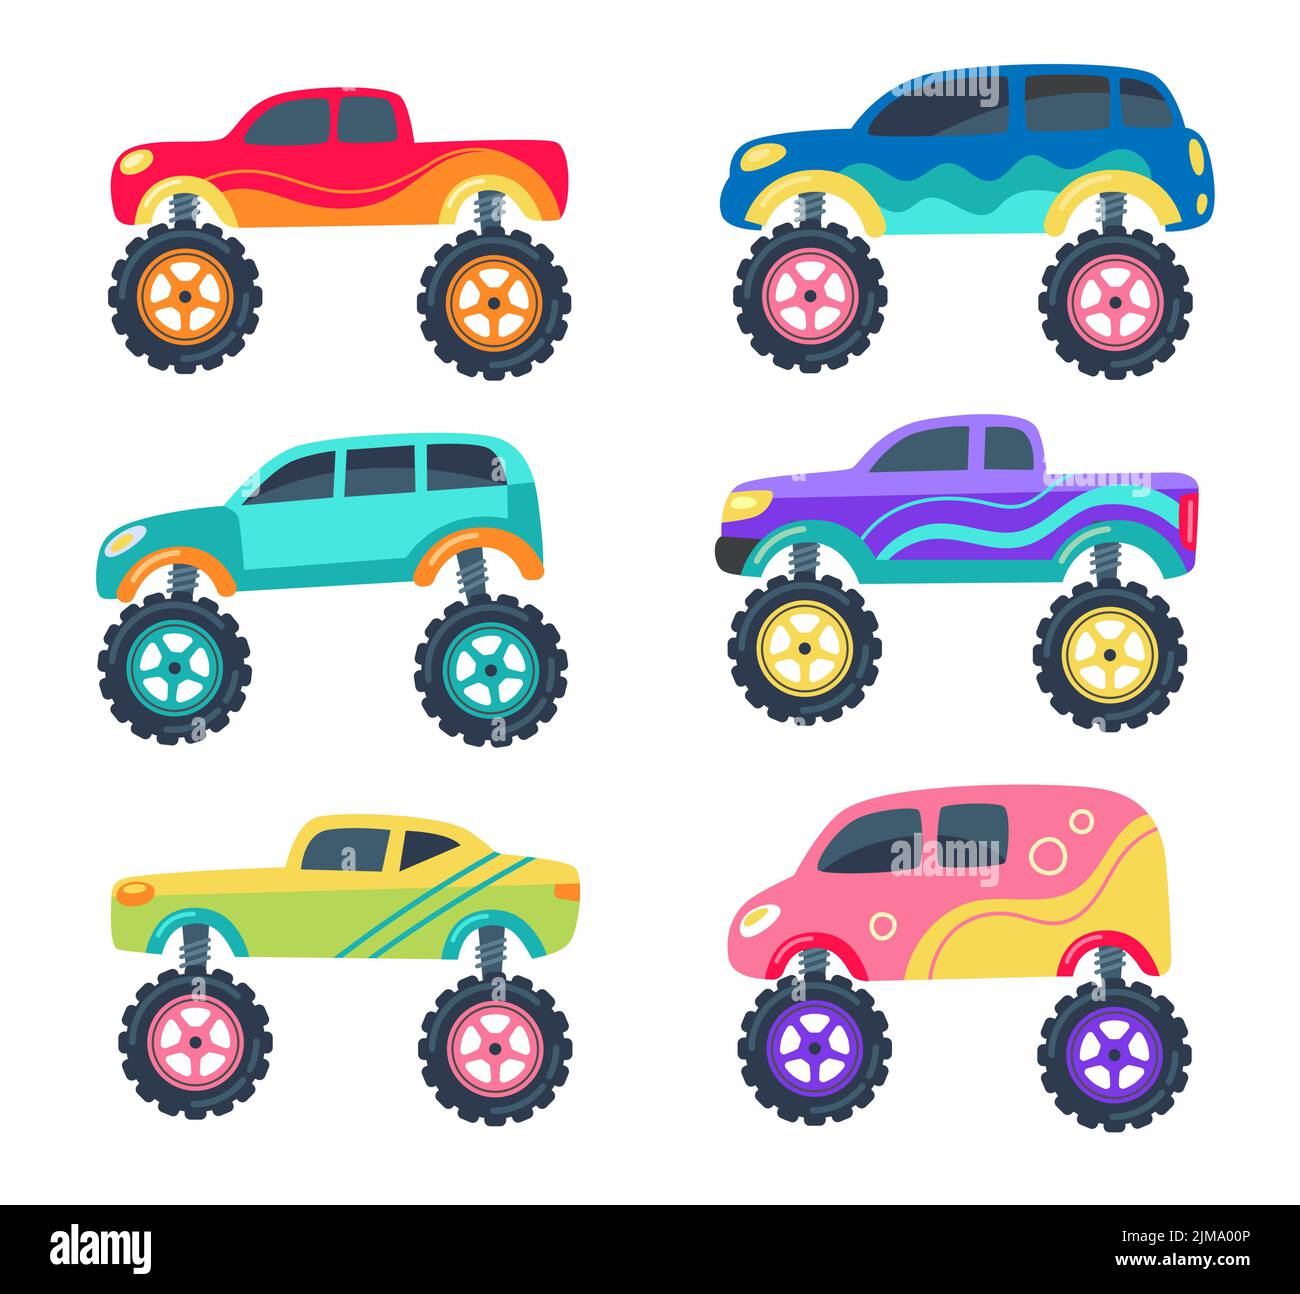 Monster Trucks als Spielzeug für Kinder Vektor Illustrationen Set. Sammlung von kindlichen Karikatur-Zeichnungen von Retro-Rennwagen mit großen Rädern auf w isoliert Stock Vektor